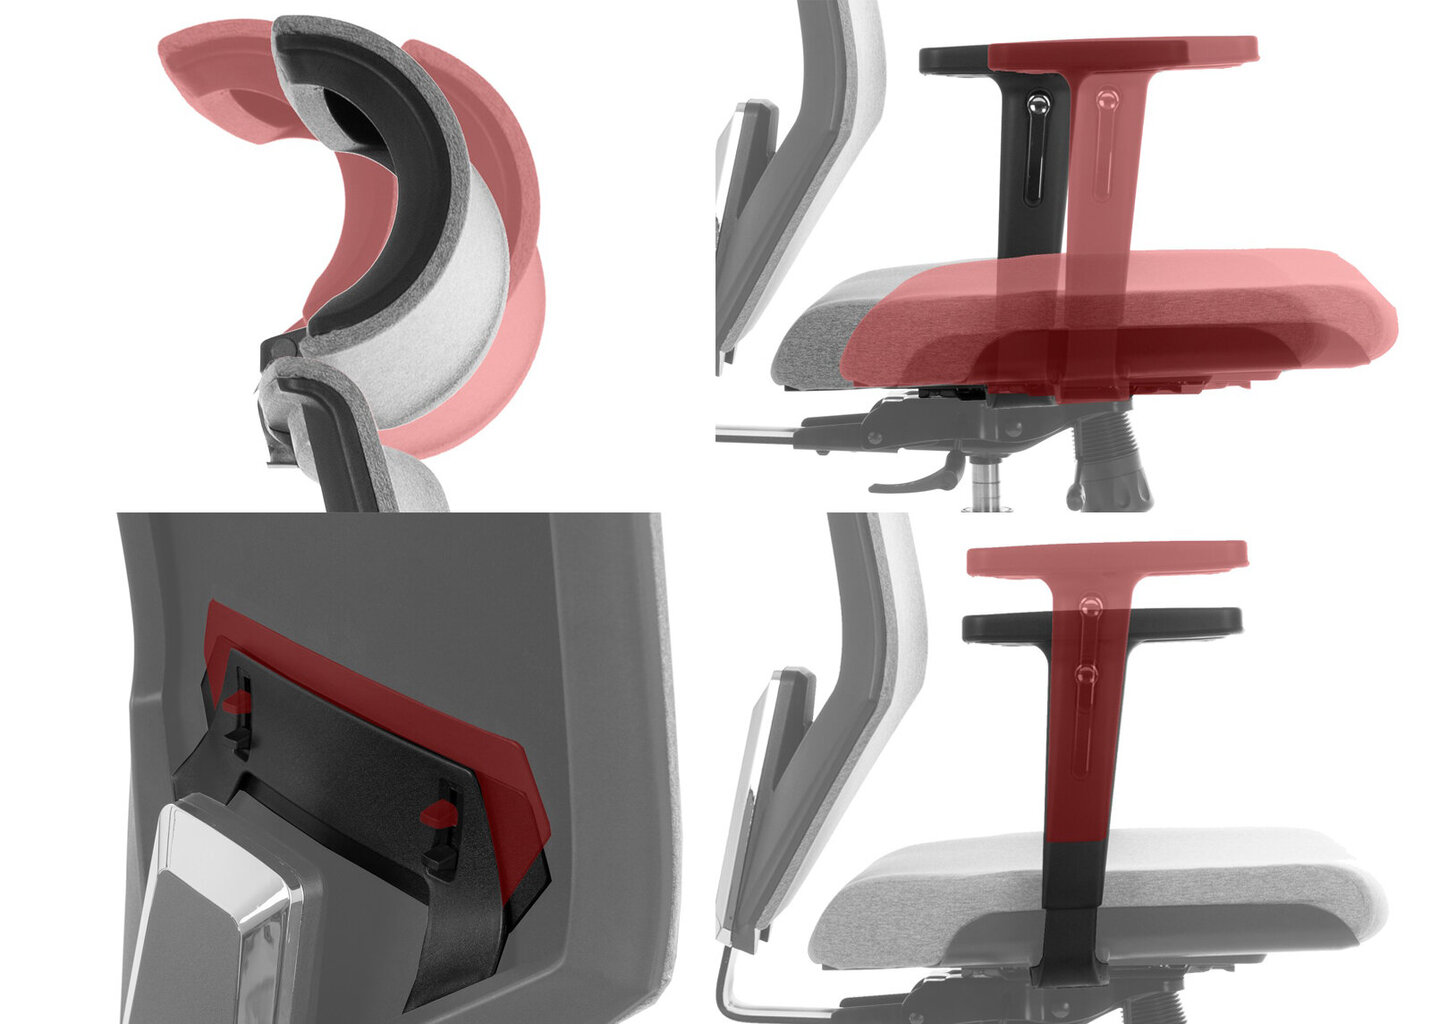 Biuro kėdė Stema ZN-805, juoda kaina ir informacija | Biuro kėdės | pigu.lt